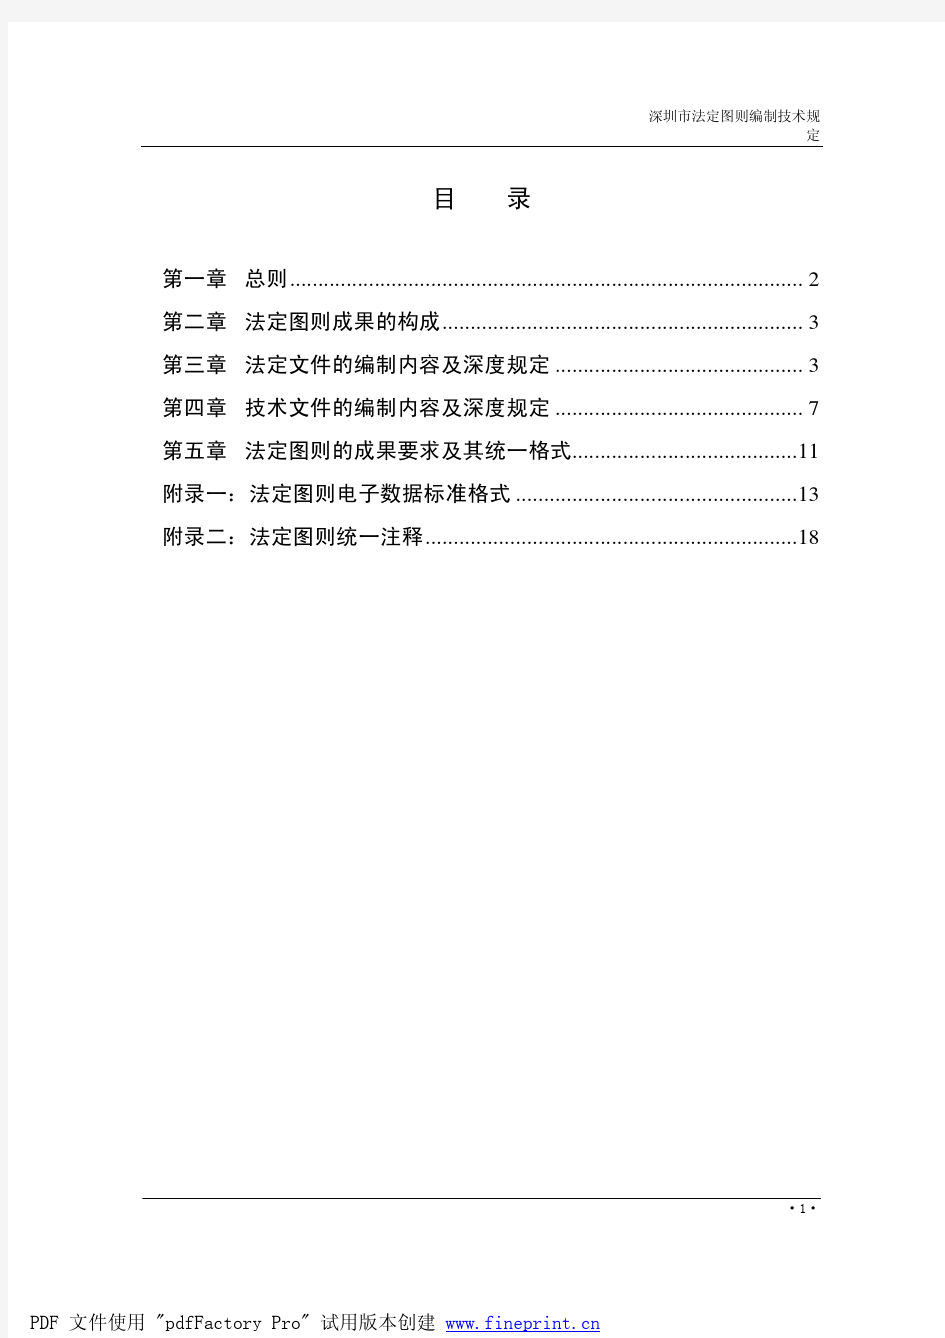 深圳市法定图则编制技术规定